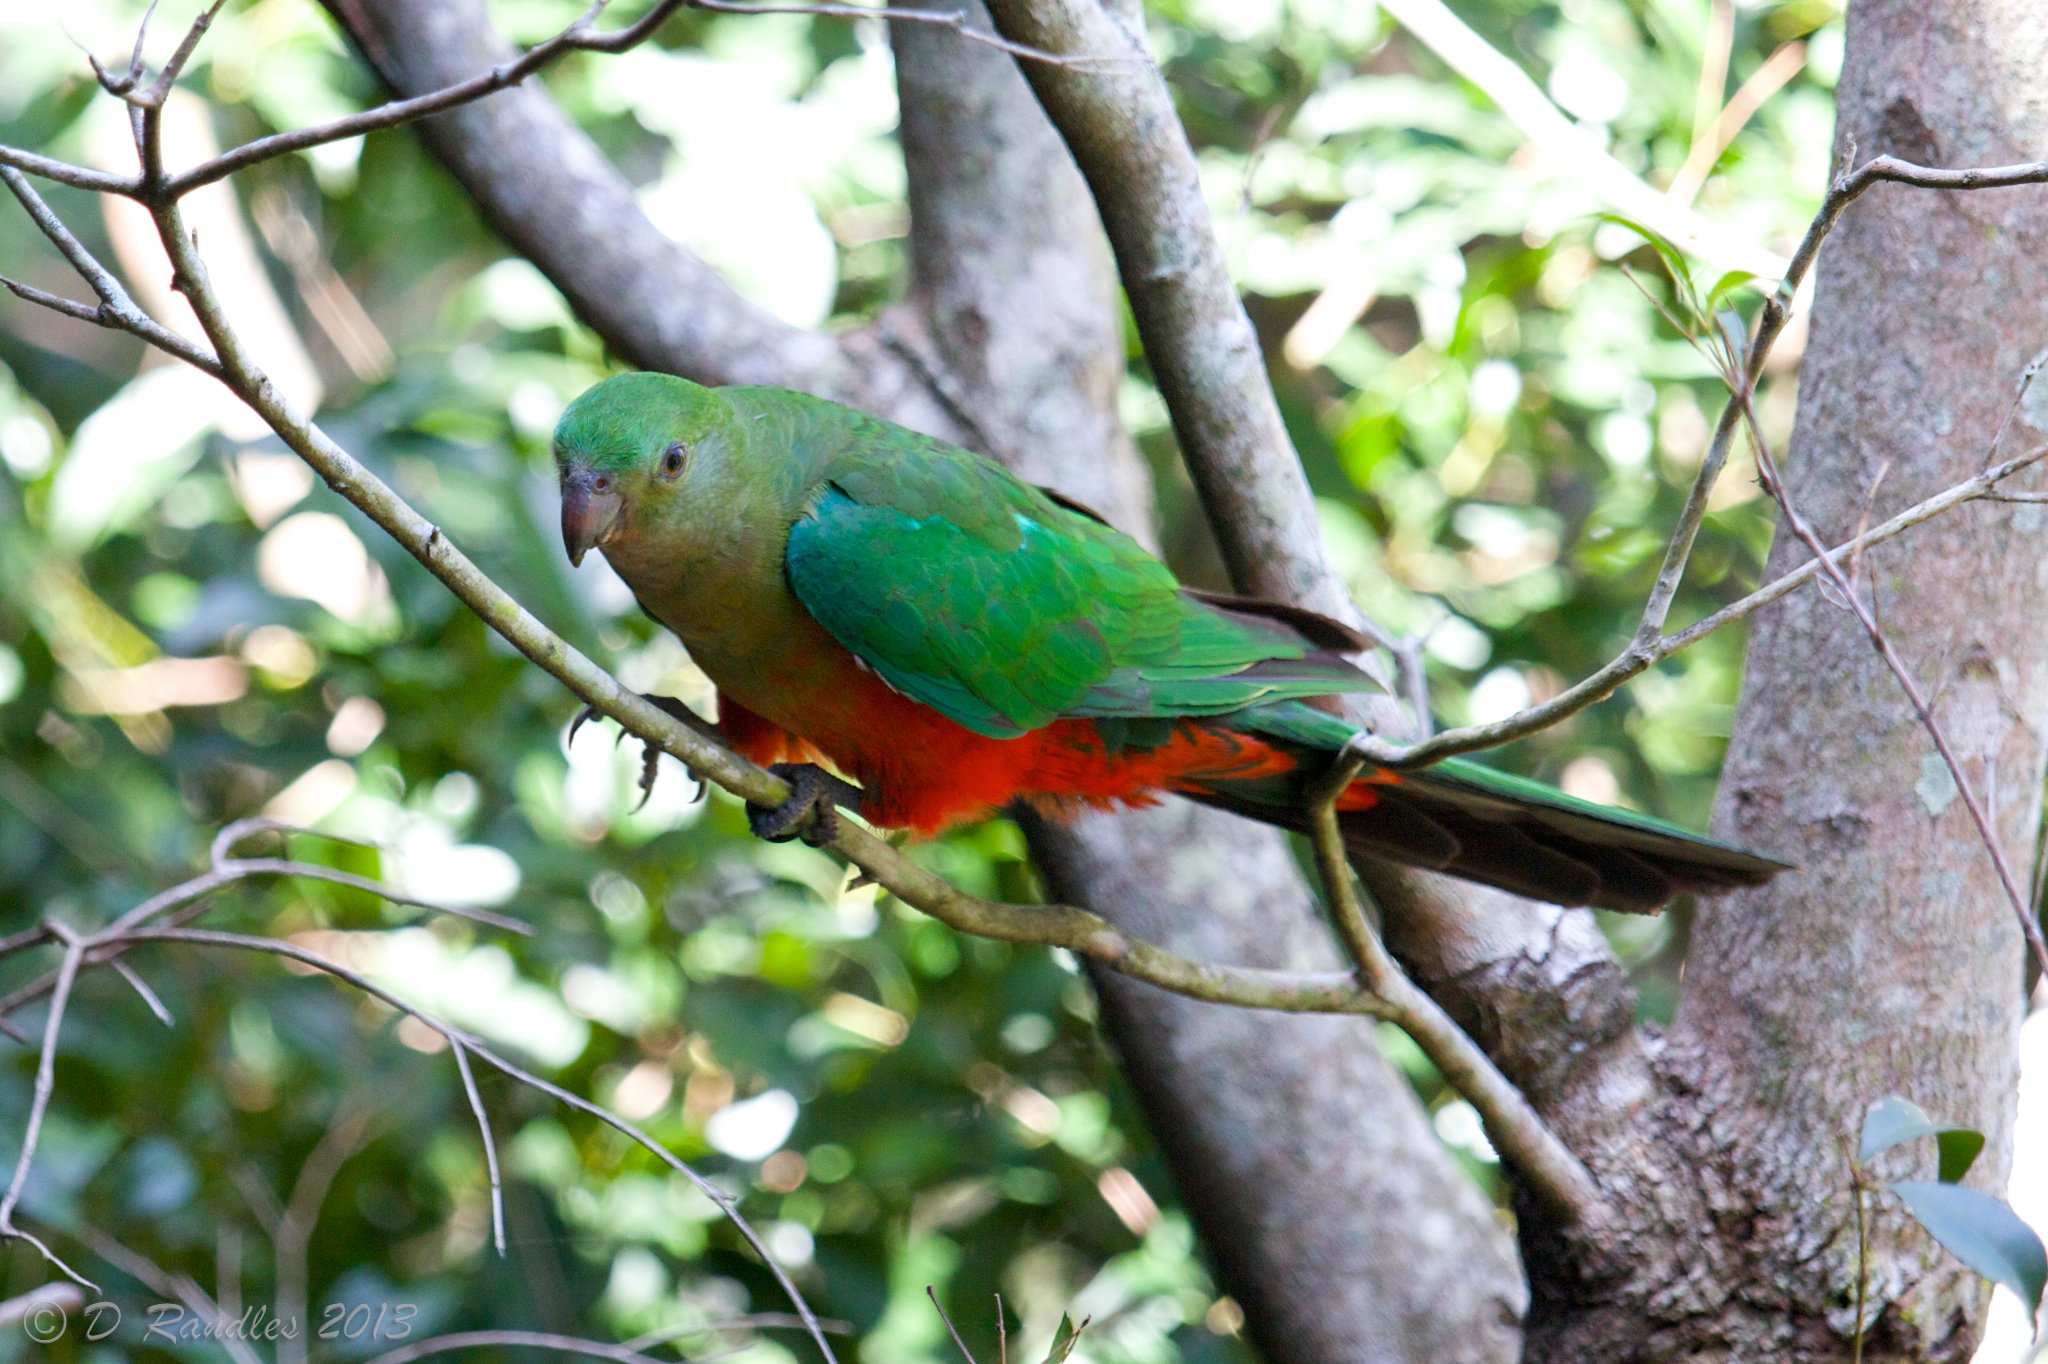 Female Australian King Parrot